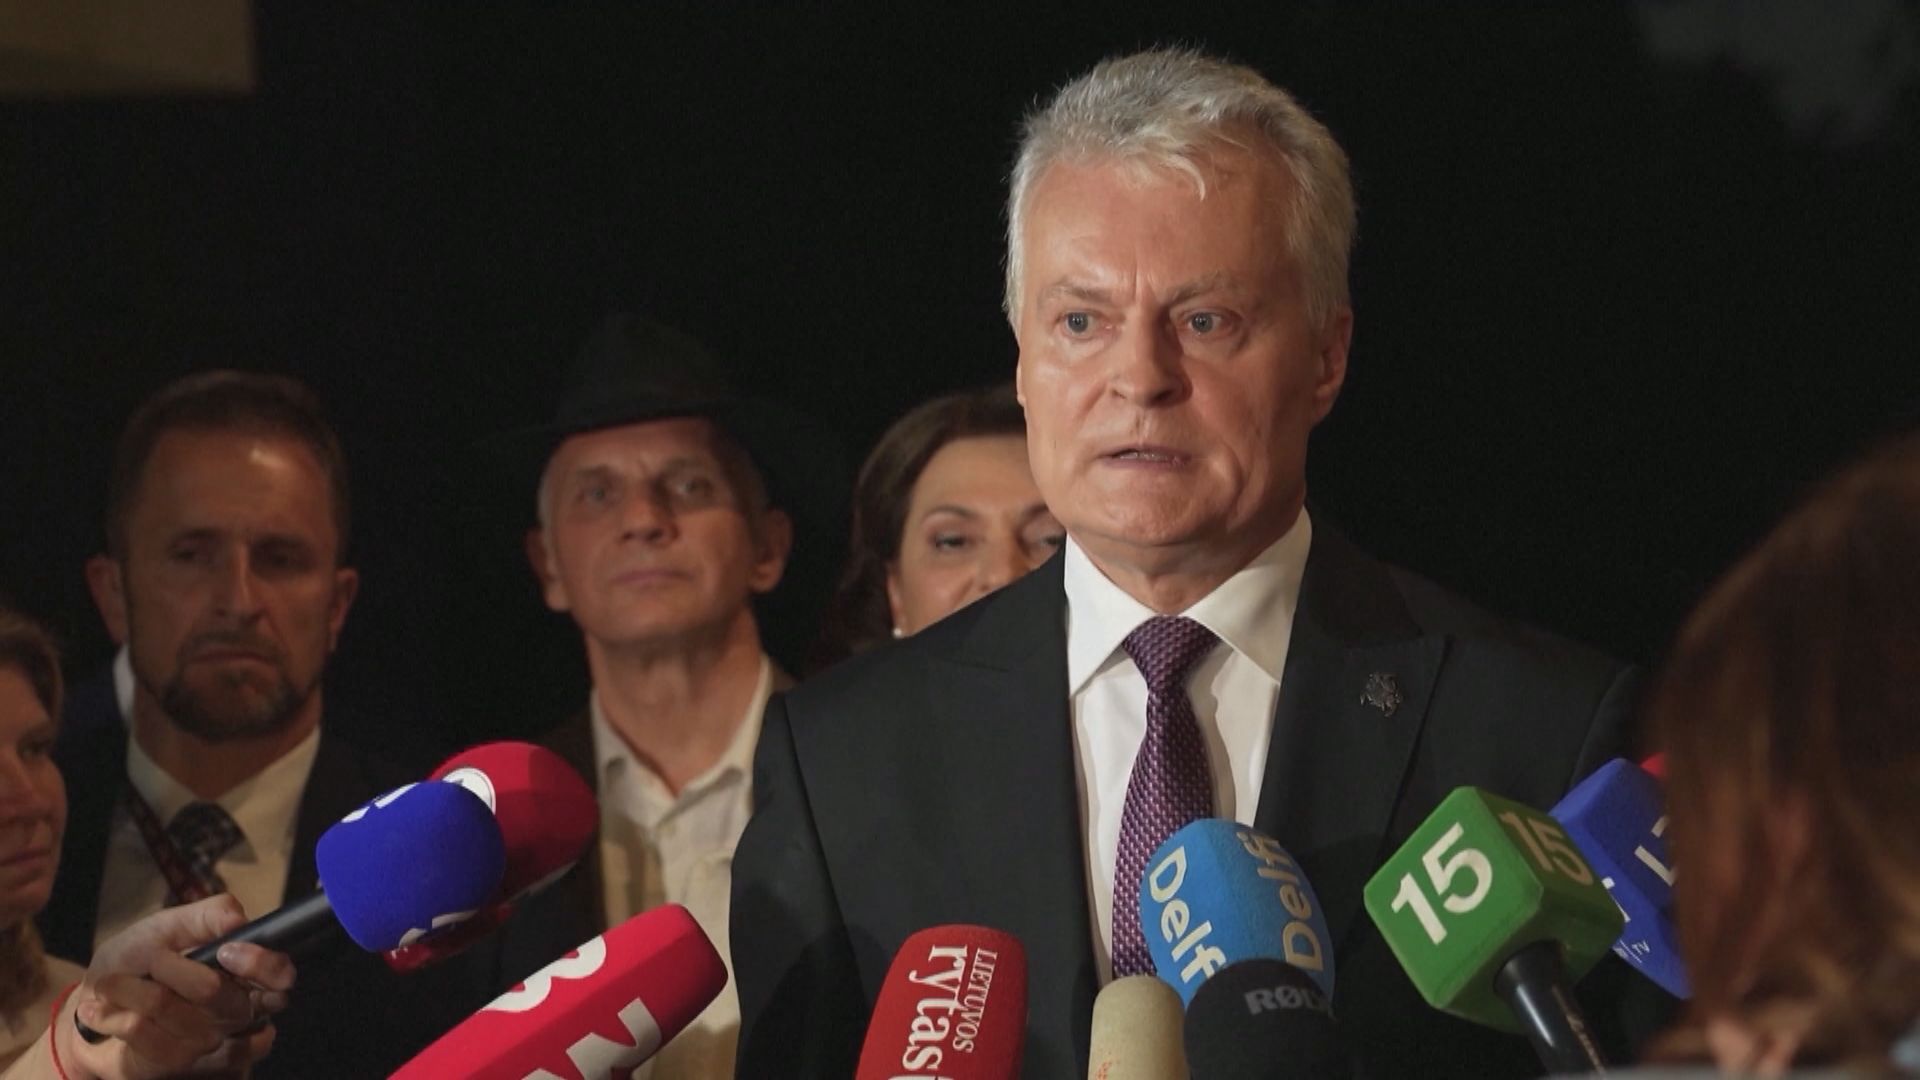 立陶宛總統選舉次輪投票結束 瑙塞達宣布成功連任